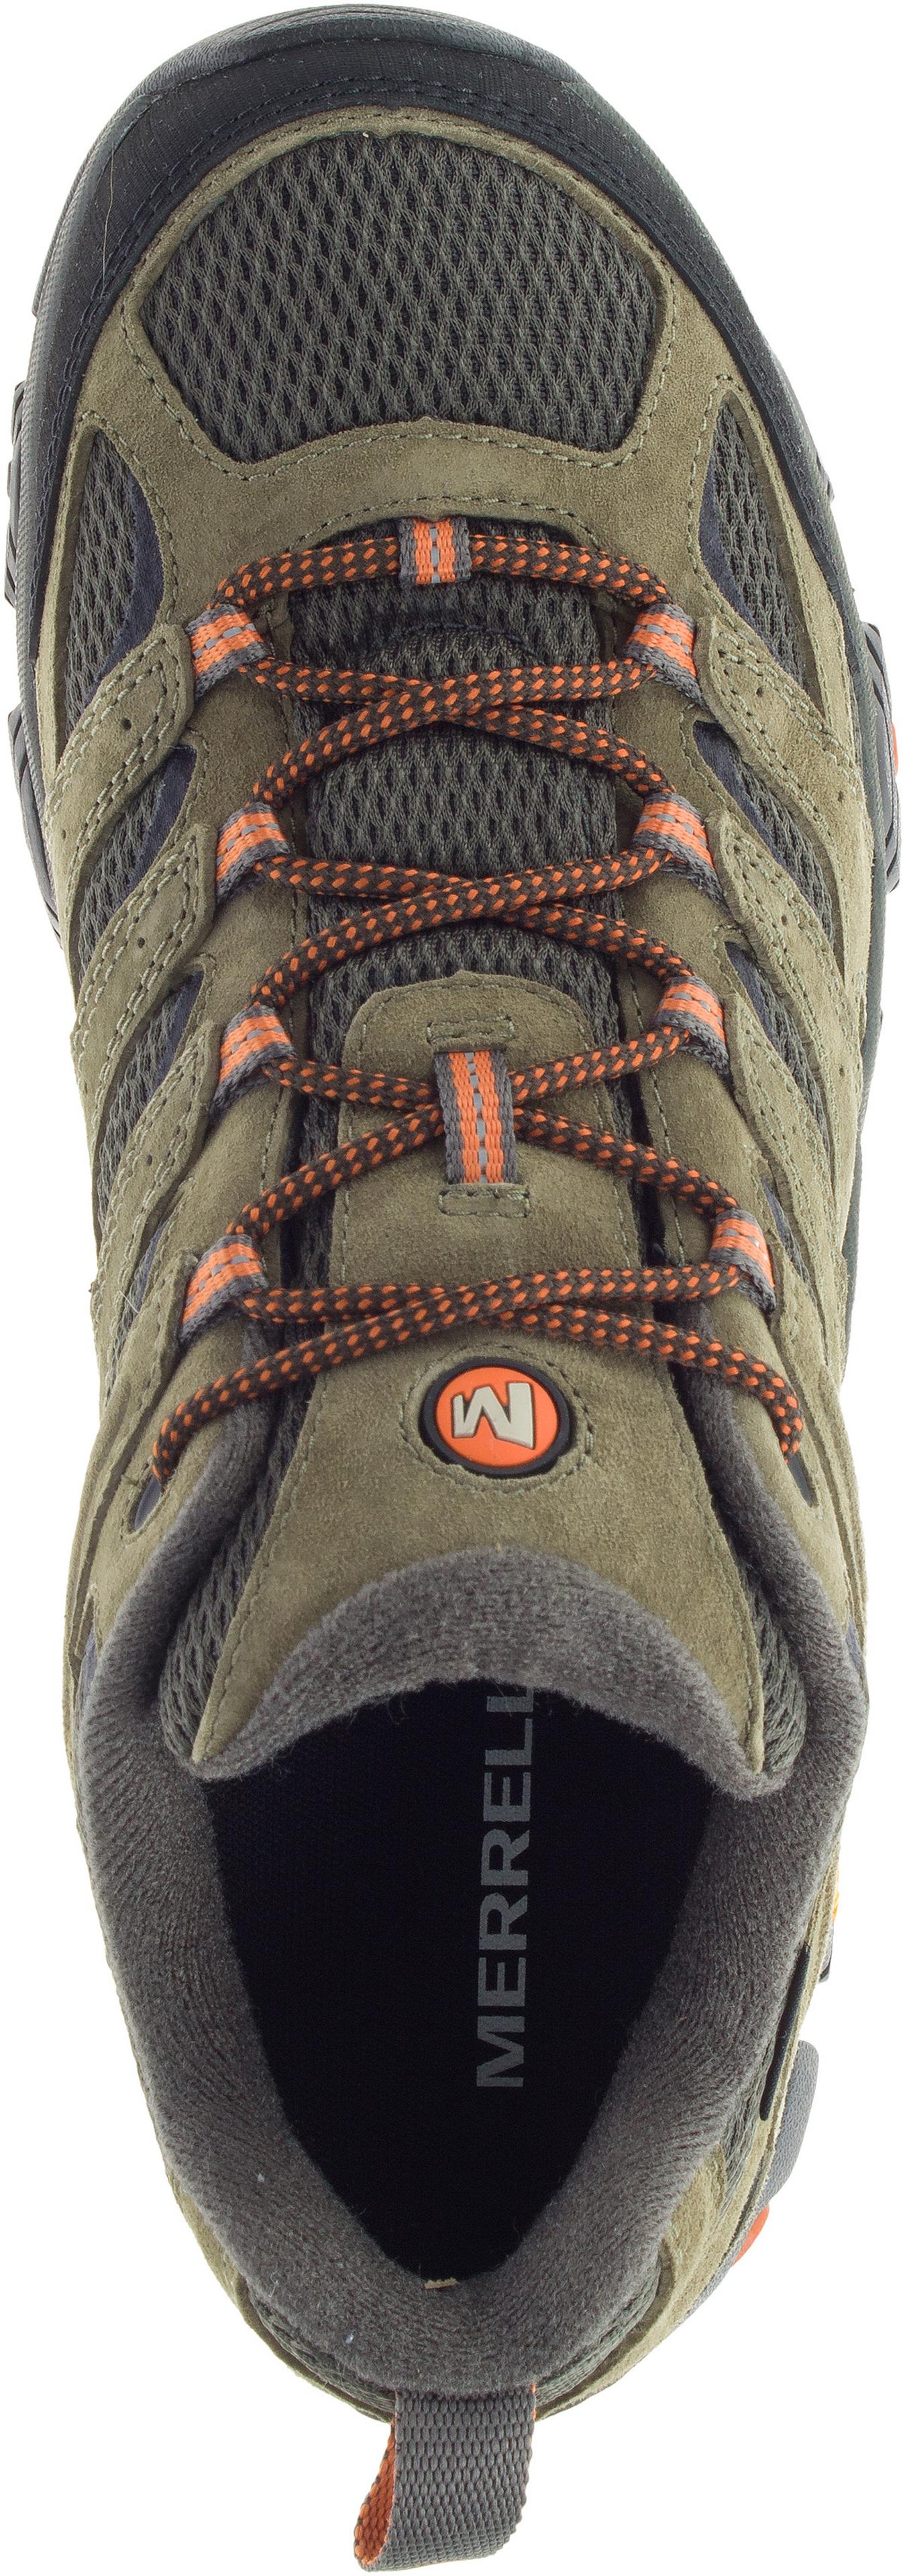 Men - Moab 3 GORE-TEX® - Shoes